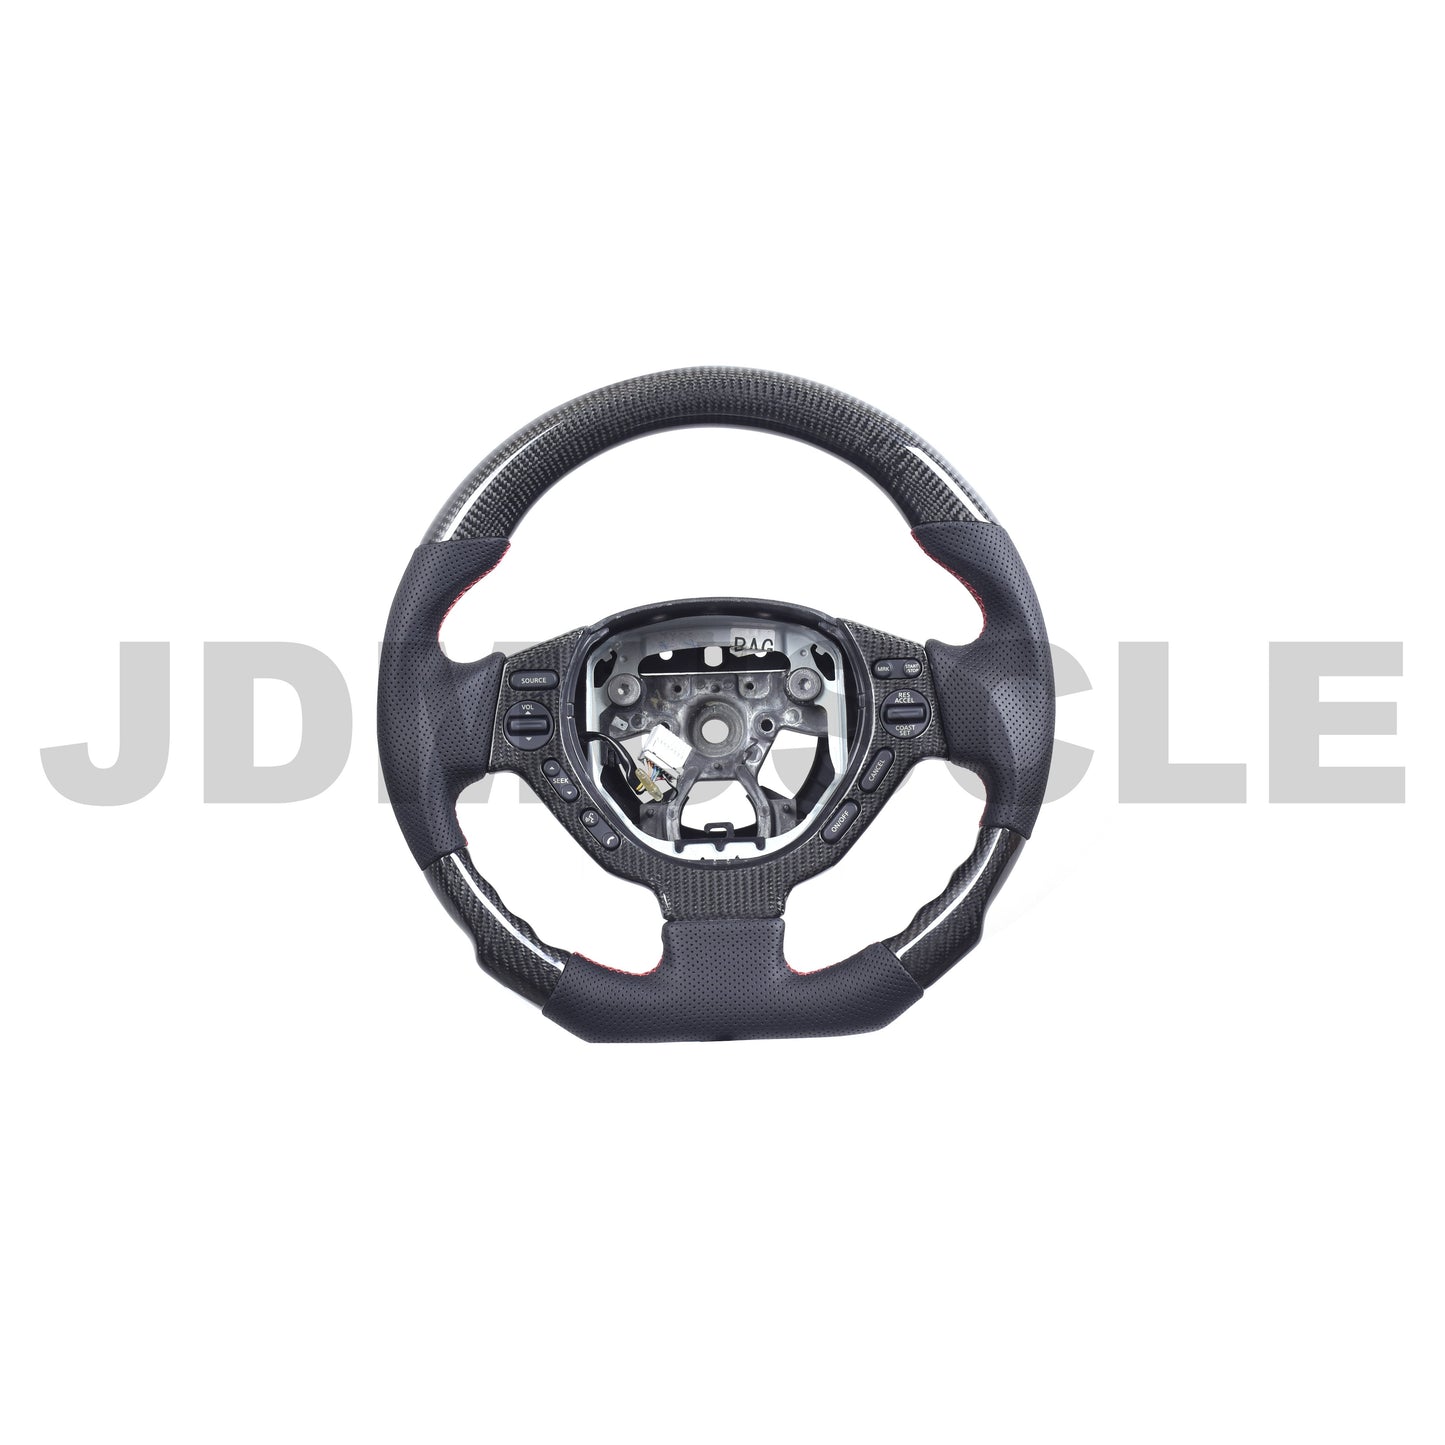 JDMuscle Custom Carbon Fiber Steering Wheel for 09-16 Nissan GTR-35 by Exclusive Steering-Steering Wheels-JDMuscle-JDMuscle